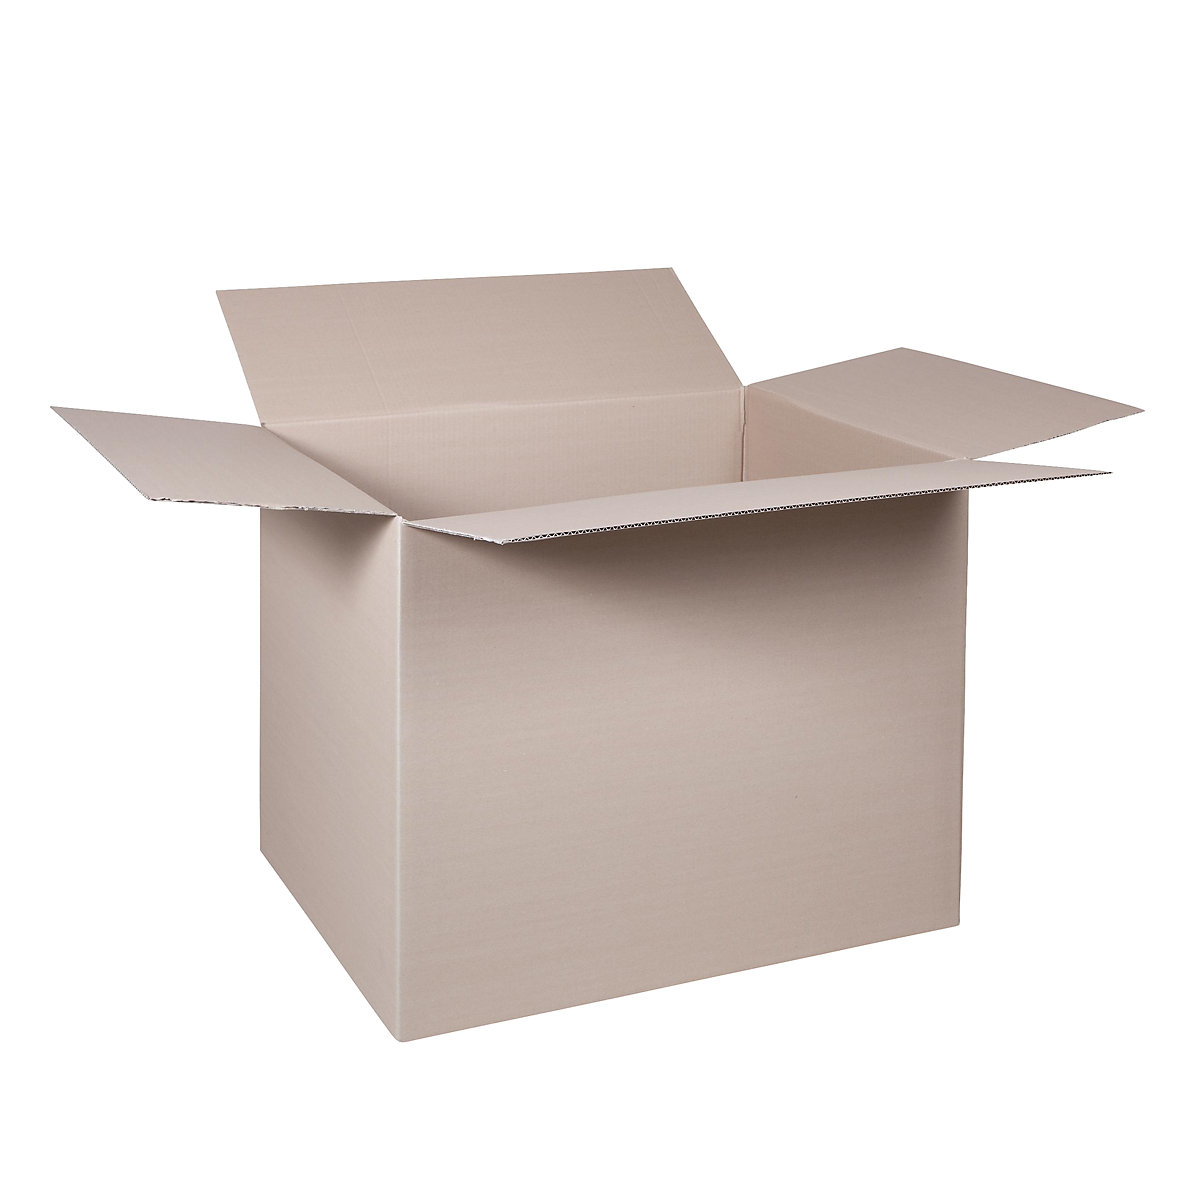 Cutie de carton pliantă, FEFCO 0201, cu 1 strat de carton ondulat, dimensiuni interioare 780 x 580 x 600 mm, amb. 100 buc.-332